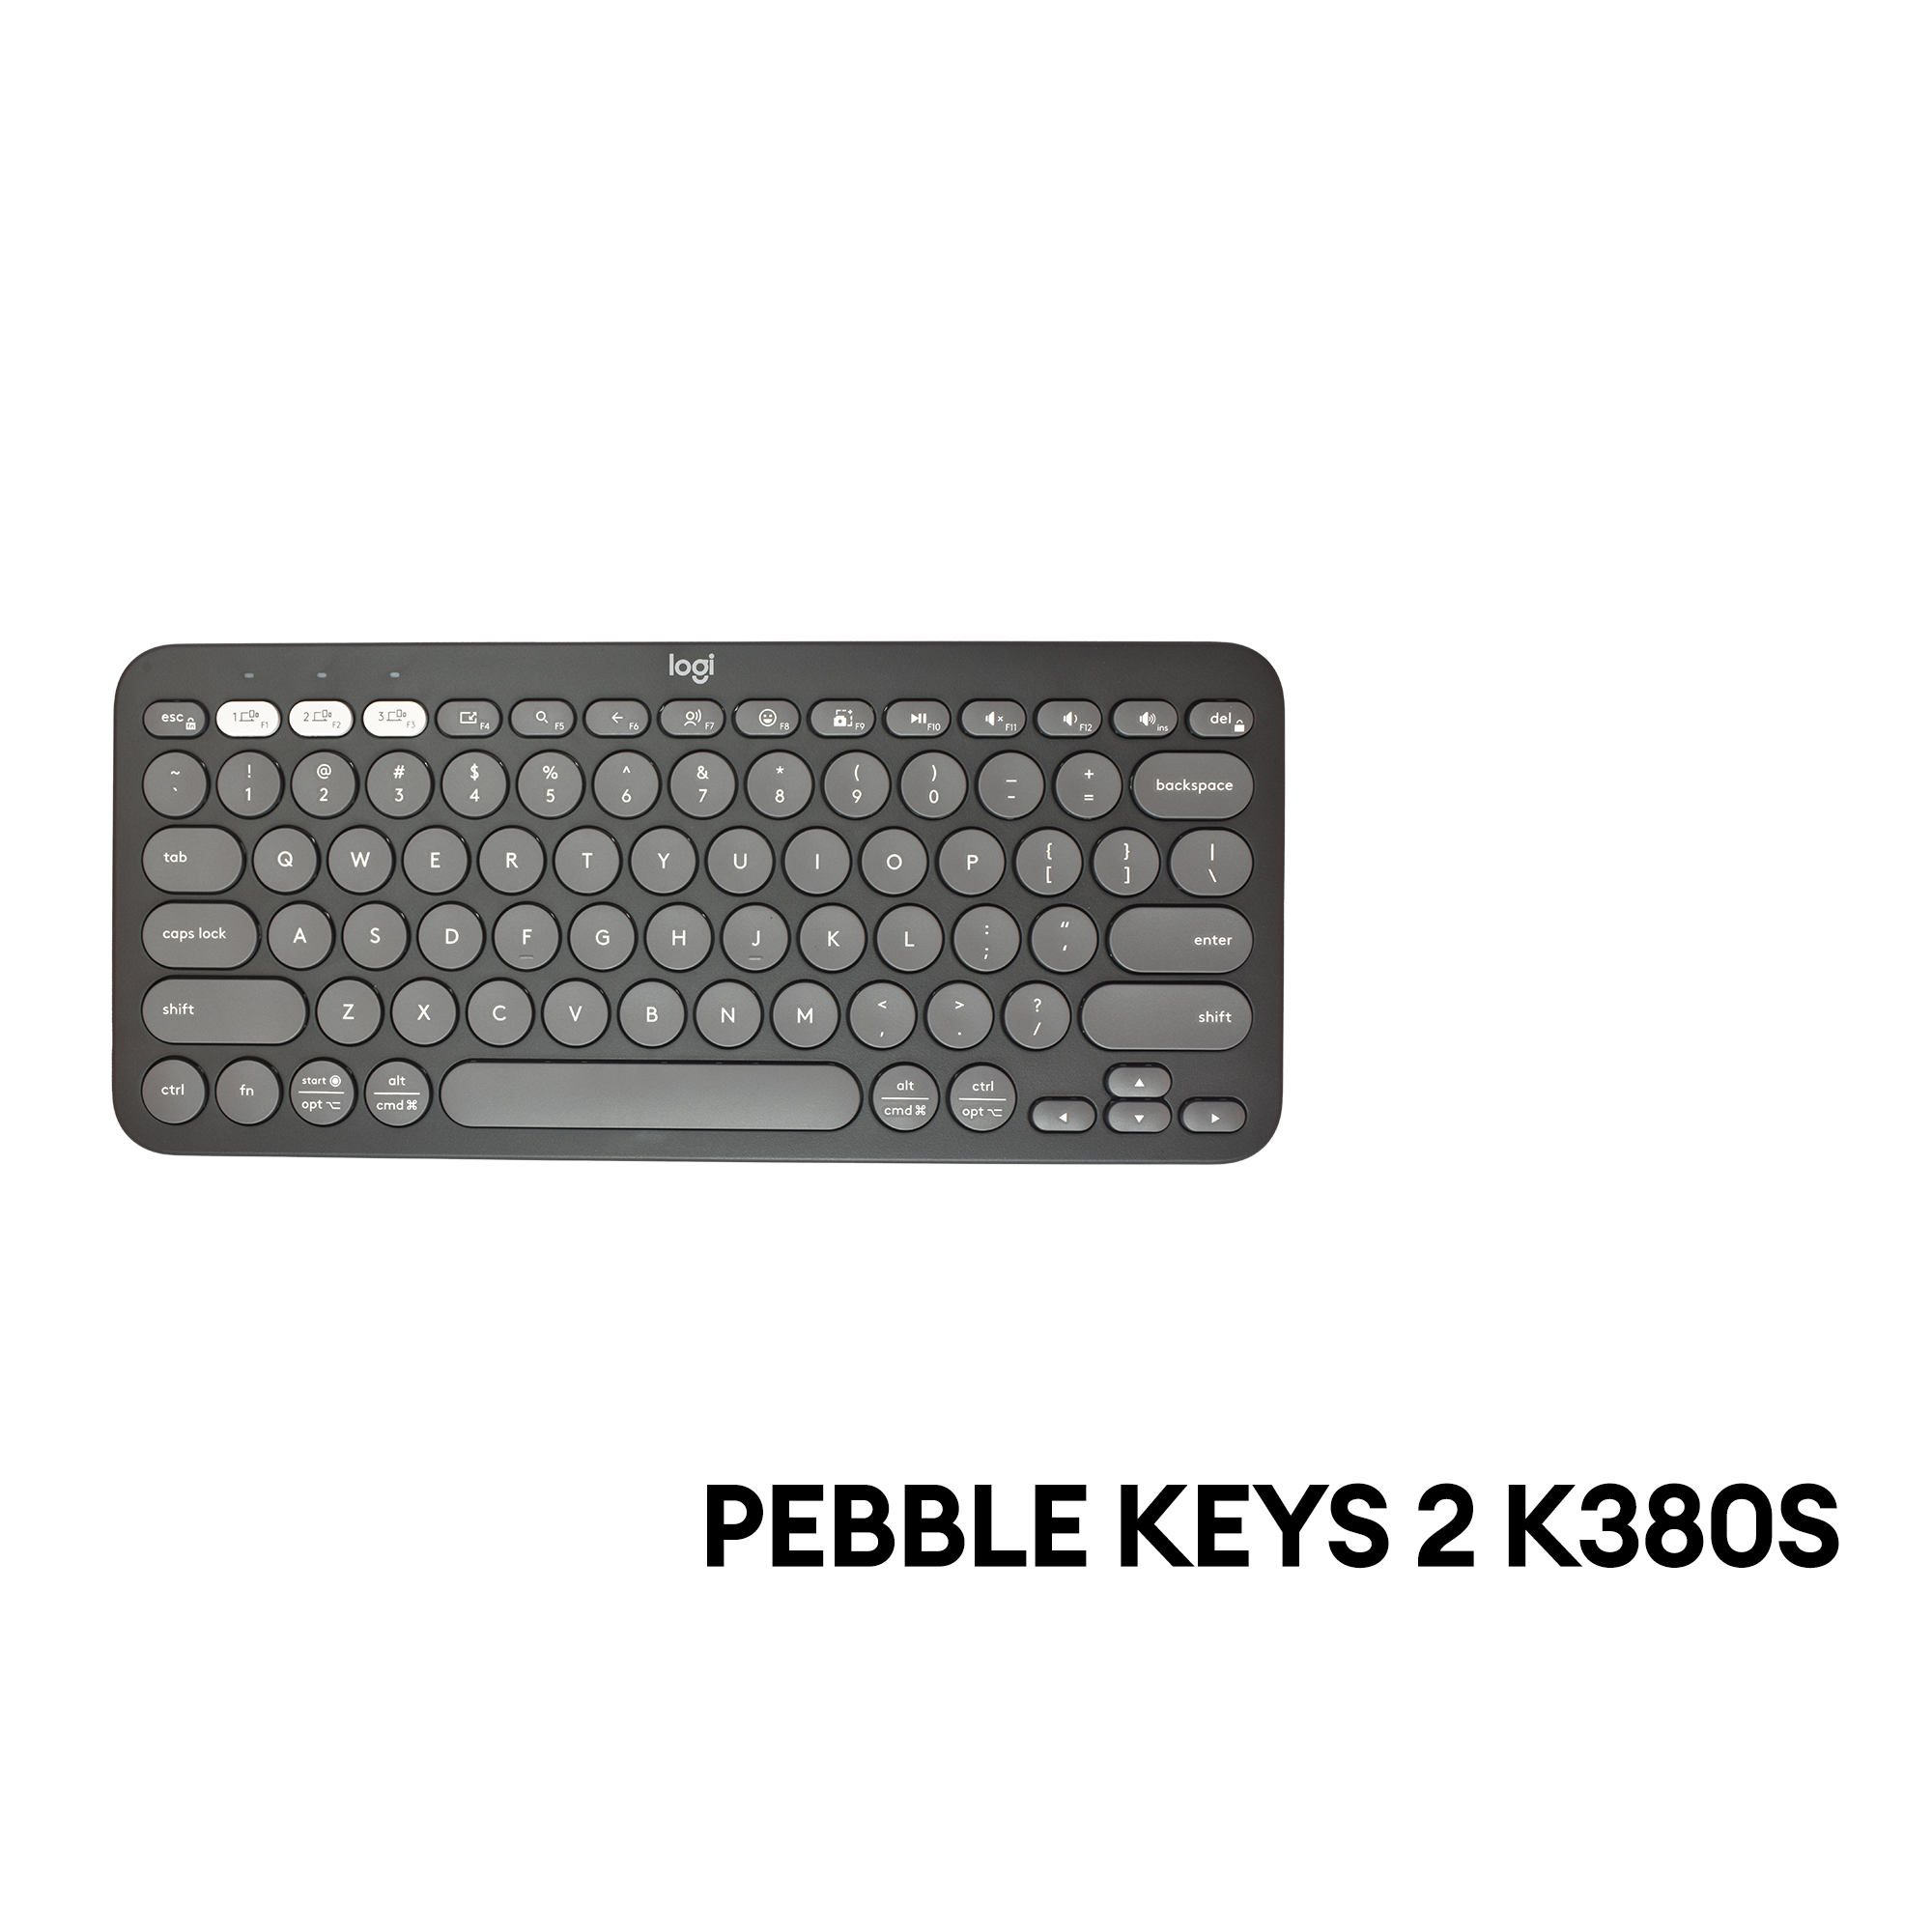 Pebble Keys 2 K380s Bluetooth Keyboard